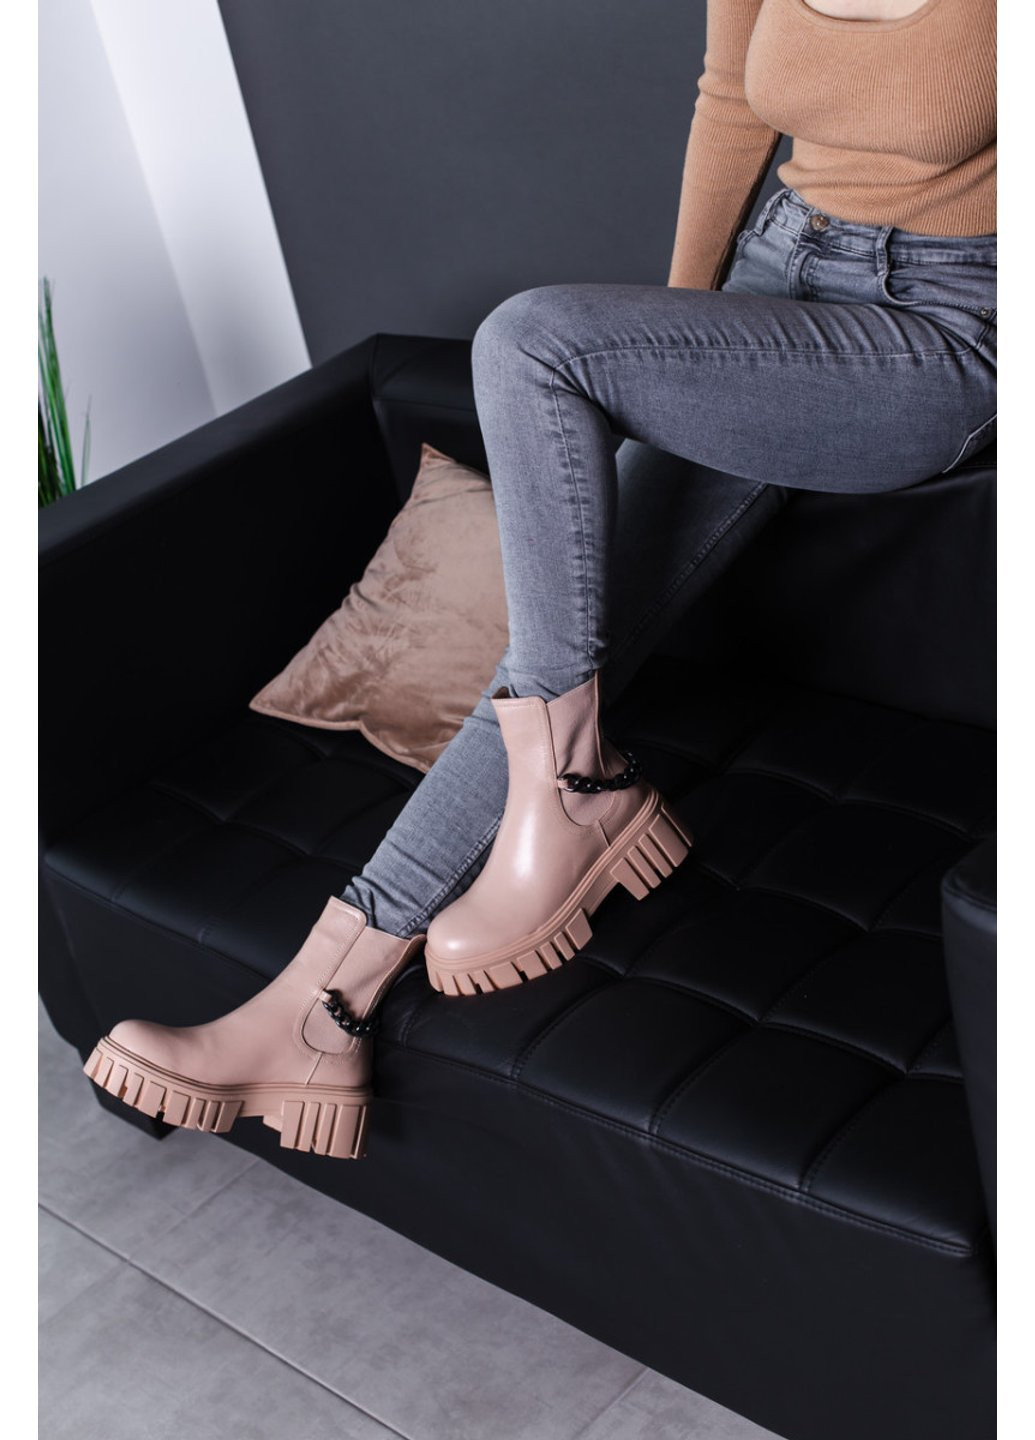 Осенние ботинки женские leith 3466 245 бежевый Fashion из искусственной кожи